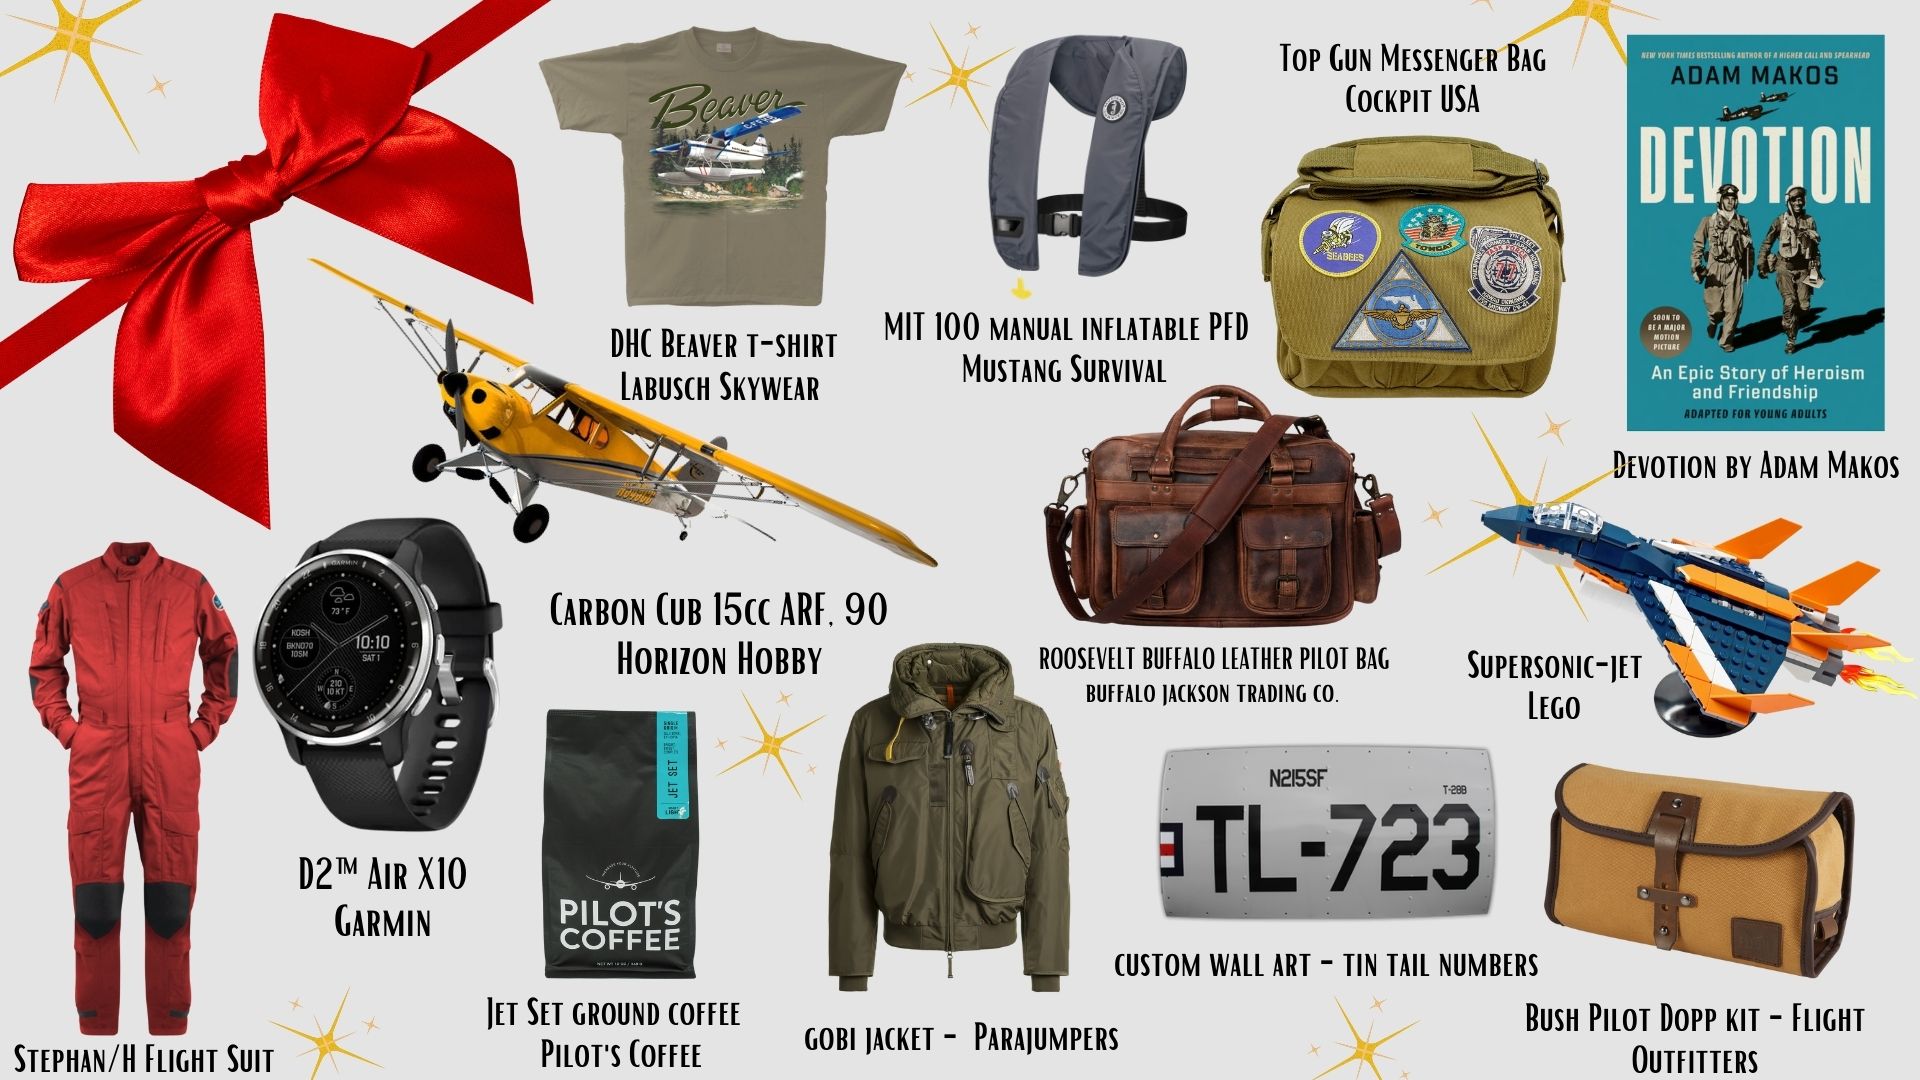 Bush Pilot Dopp Kit – Flight Outfitters